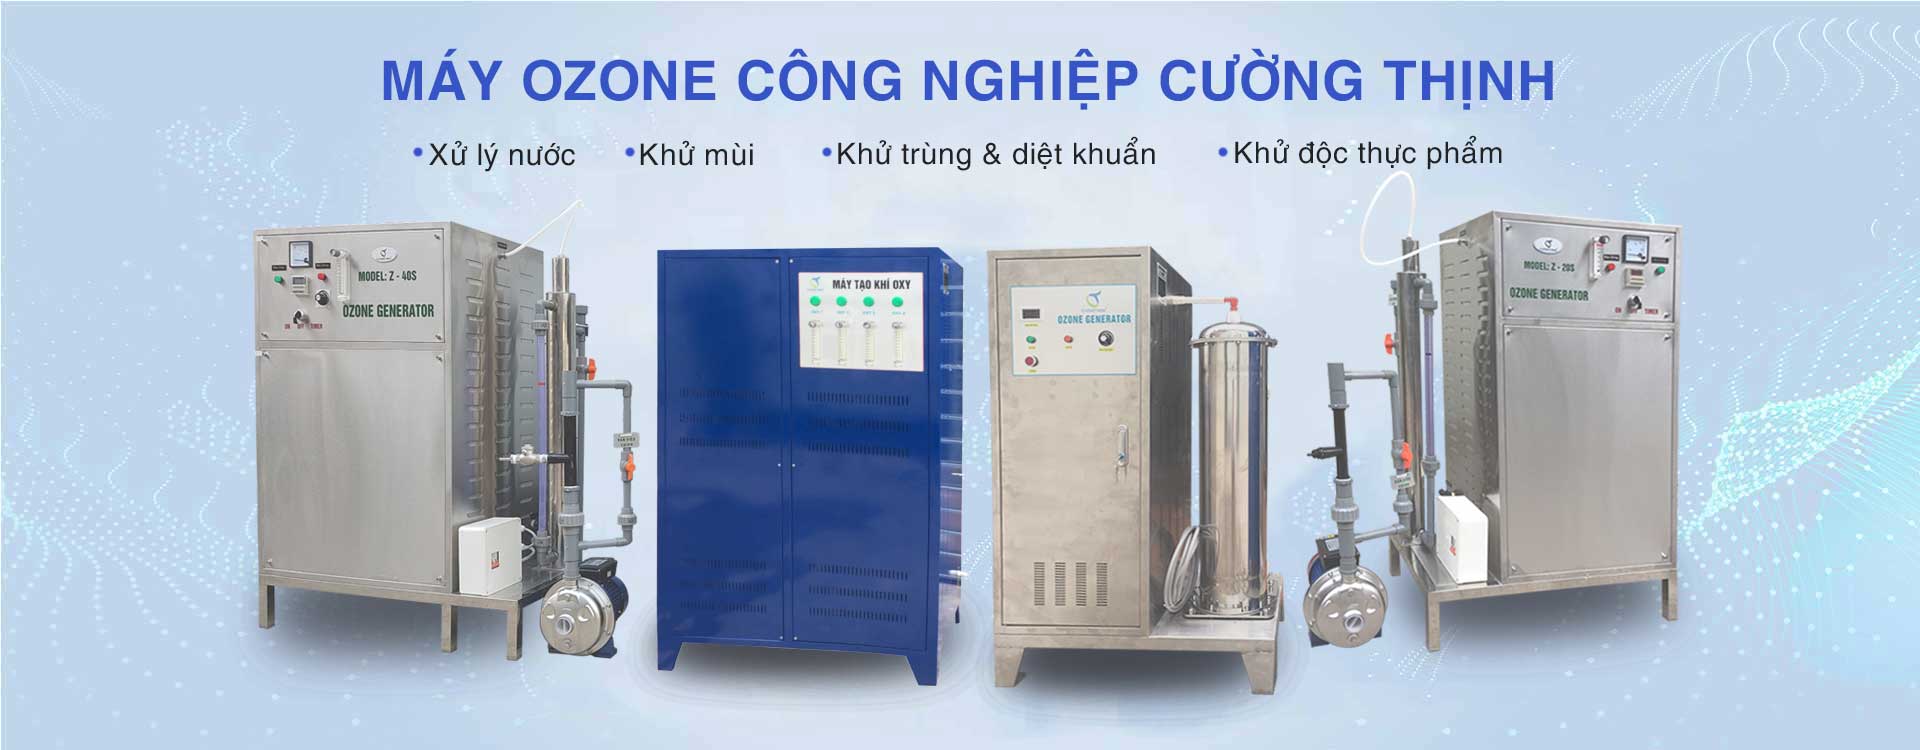 Banner máy ozone công nghiệp Cường Thịnh